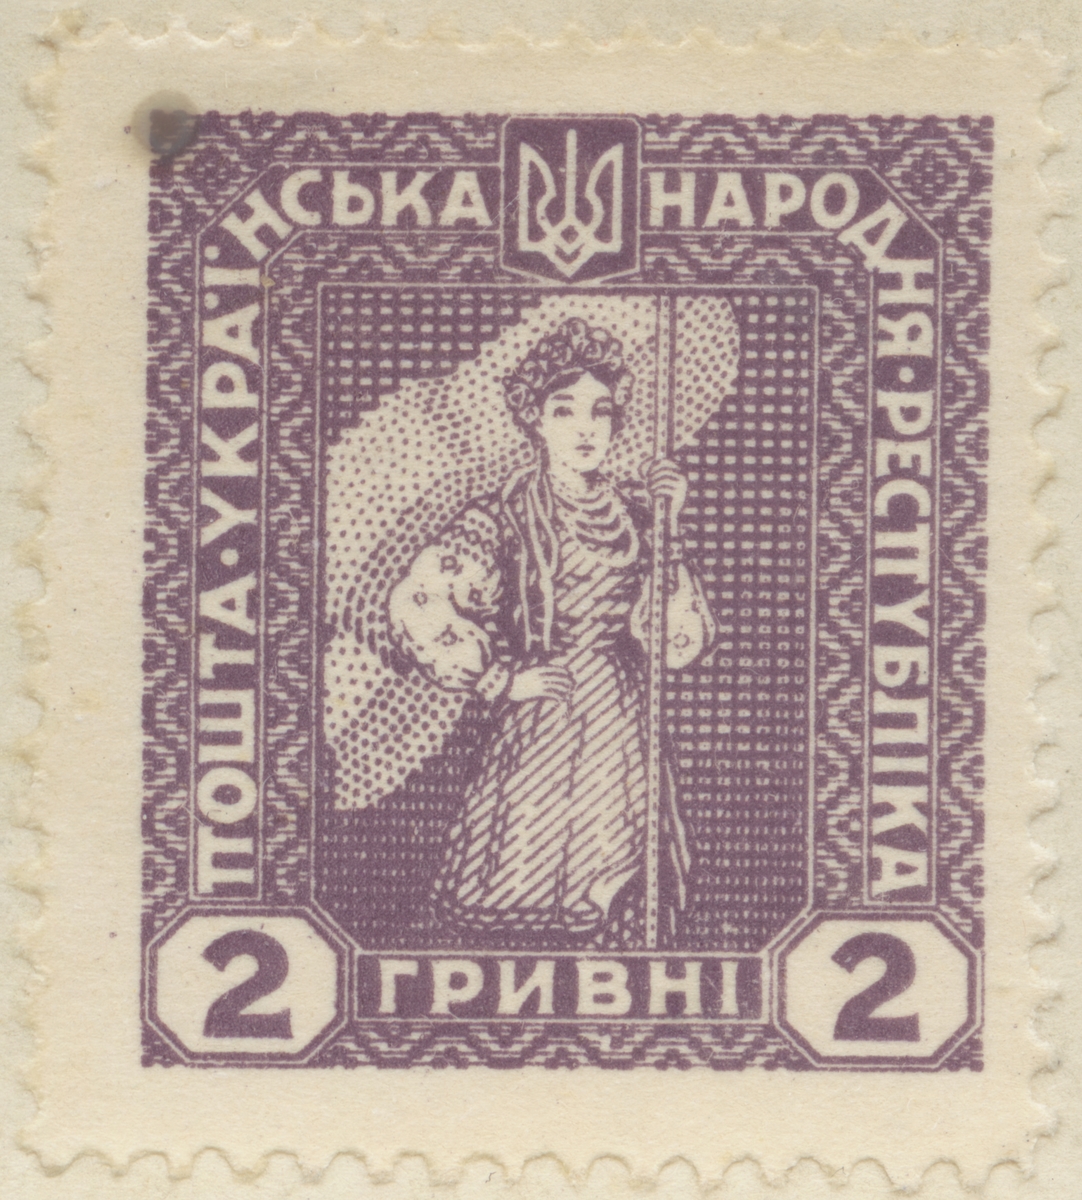 Frimärke ur Gösta Bodmans filatelistiska motivsamling, påbörjad 1950.
Frimärke från Ukraina, 1921. Motiv av kvinnodräkt.